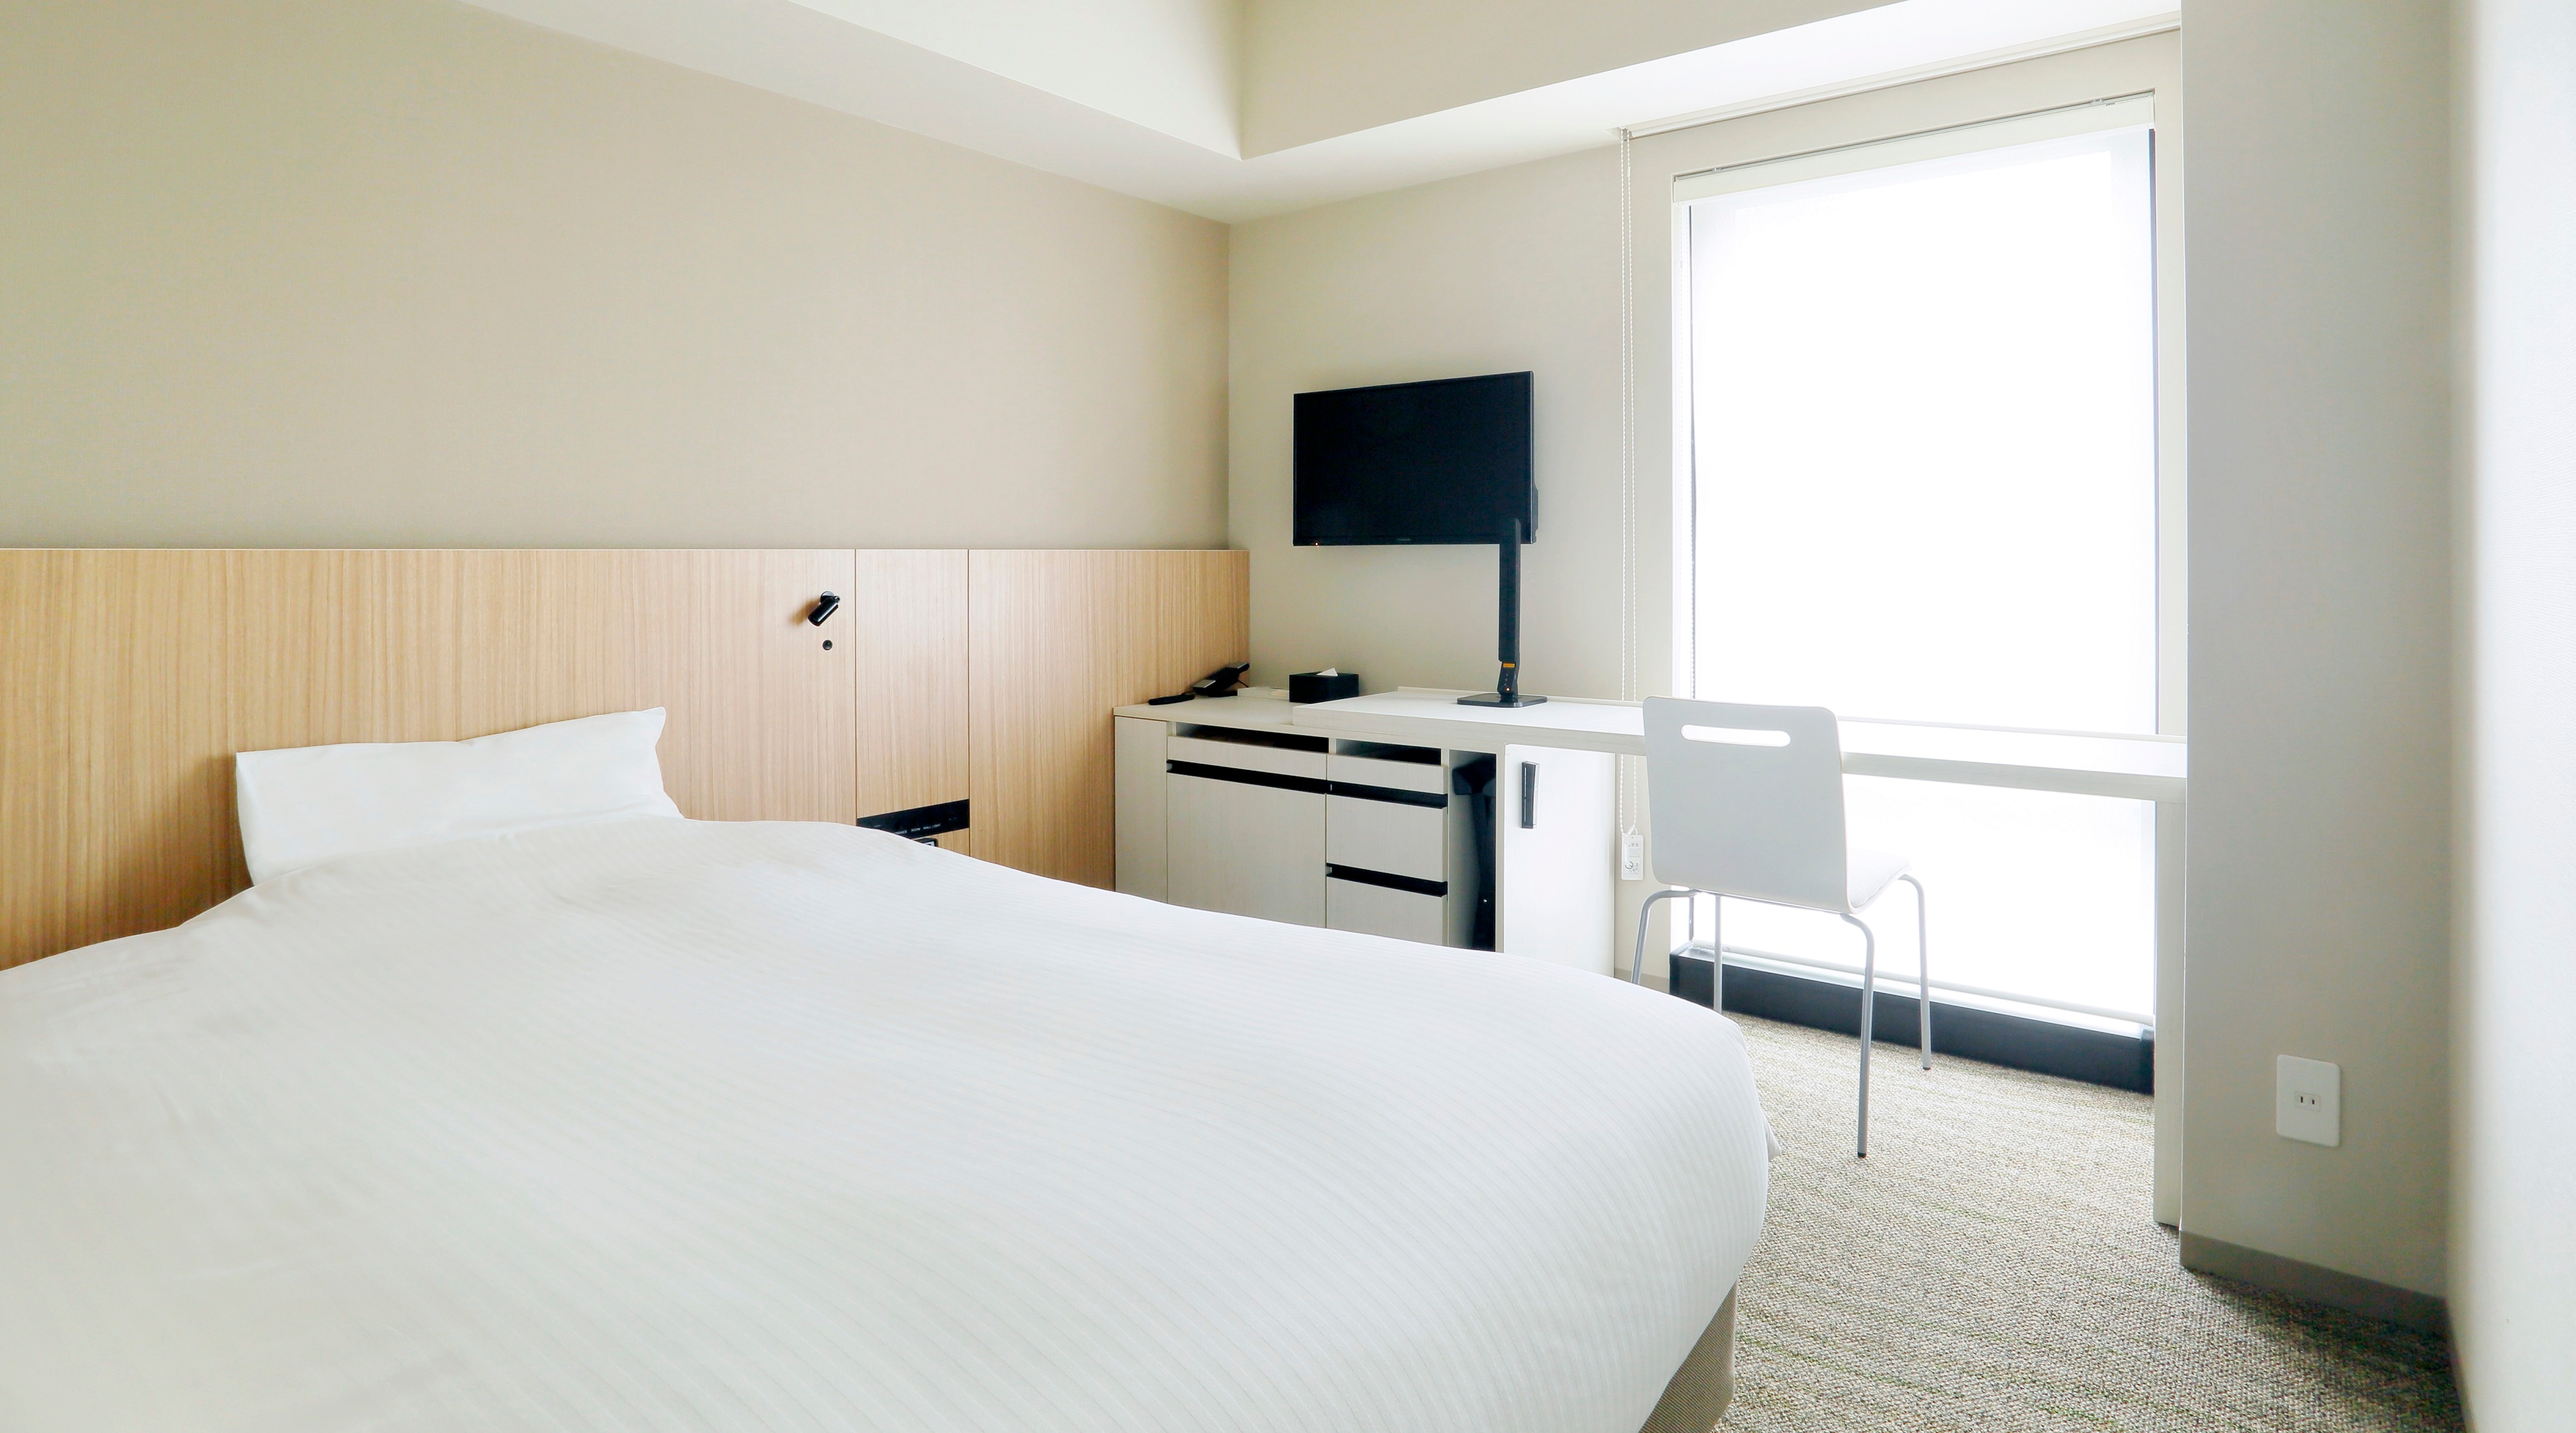 Kamar semi-double 16㎡ tempat tidur semi-double dengan lebar 140cm dapat menampung 2 orang